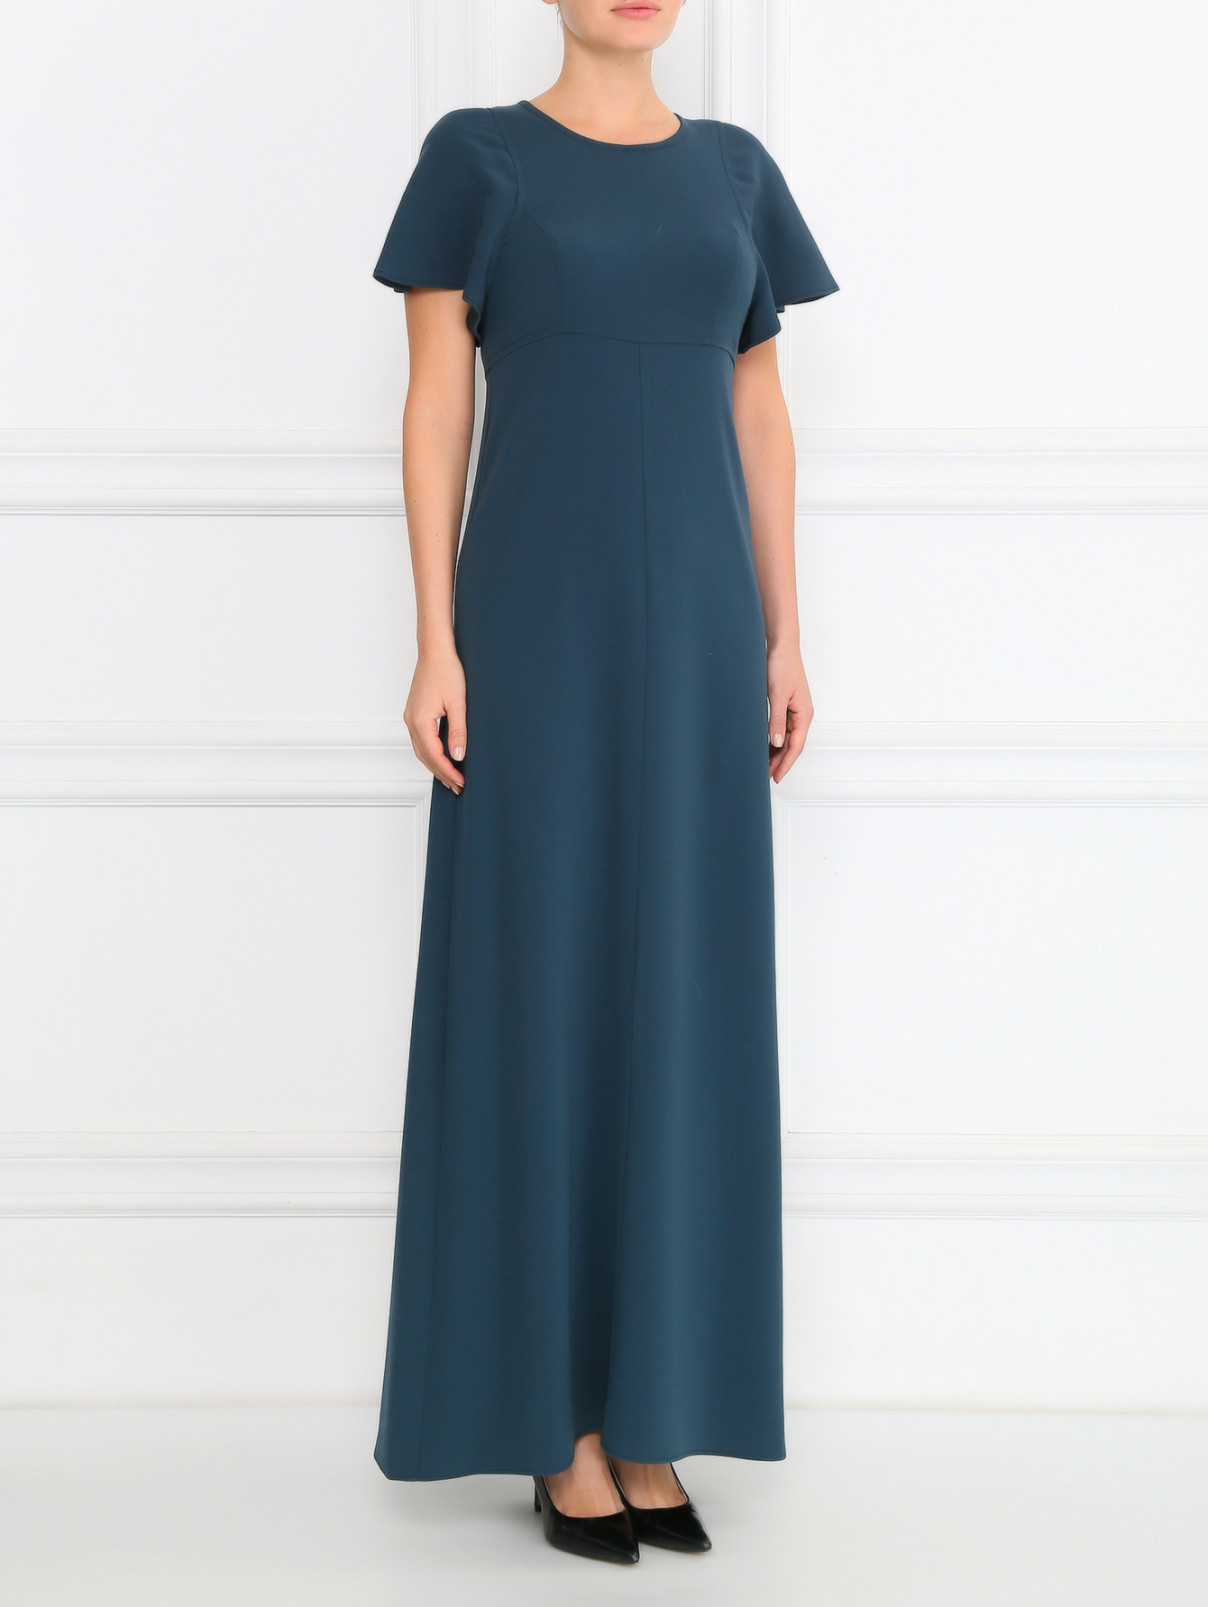 Однотонное платье-макси с коротким рукавом Max&Co  –  Модель Общий вид  – Цвет:  Зеленый